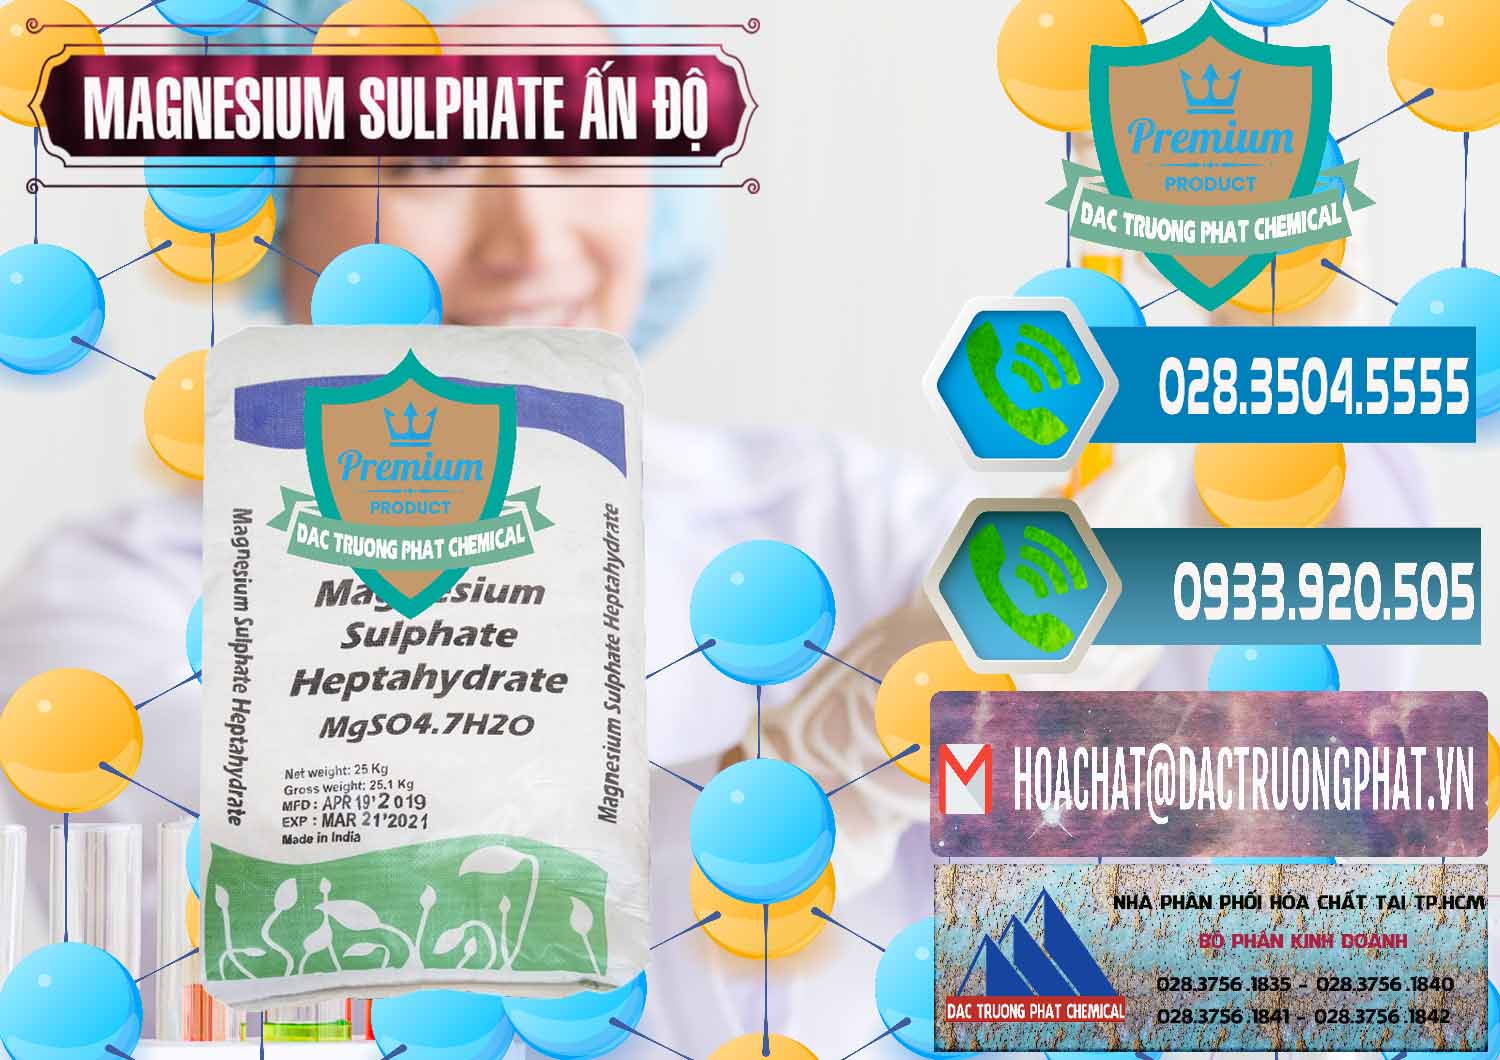 Cung cấp & bán MGSO4.7H2O – Magnesium Sulphate Heptahydrate Ấn Độ India - 0362 - Cty chuyên nhập khẩu ( cung cấp ) hóa chất tại TP.HCM - congtyhoachat.net